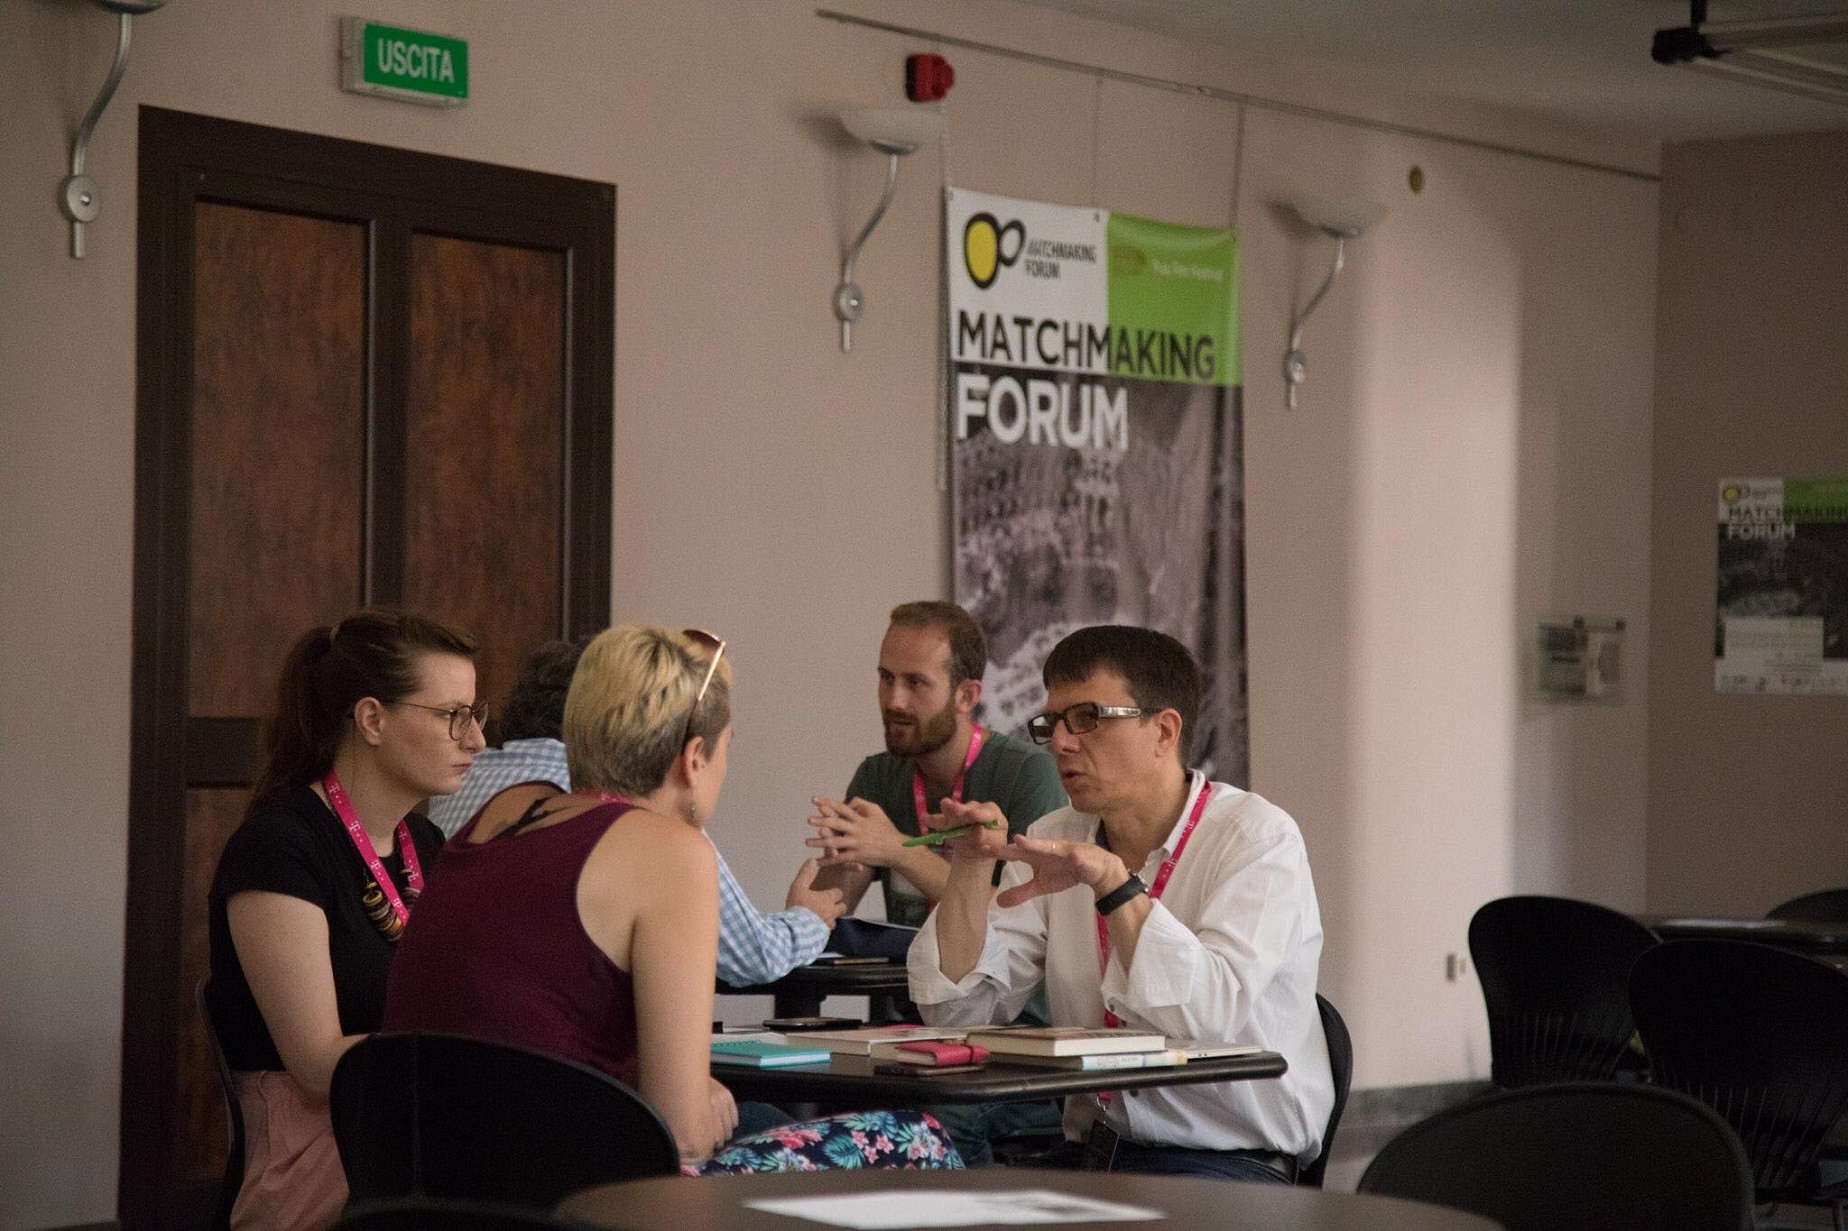 Durim Kryeziu pjesë e “Matchmaking Forum” në Festivalin e Filmit të Pulës